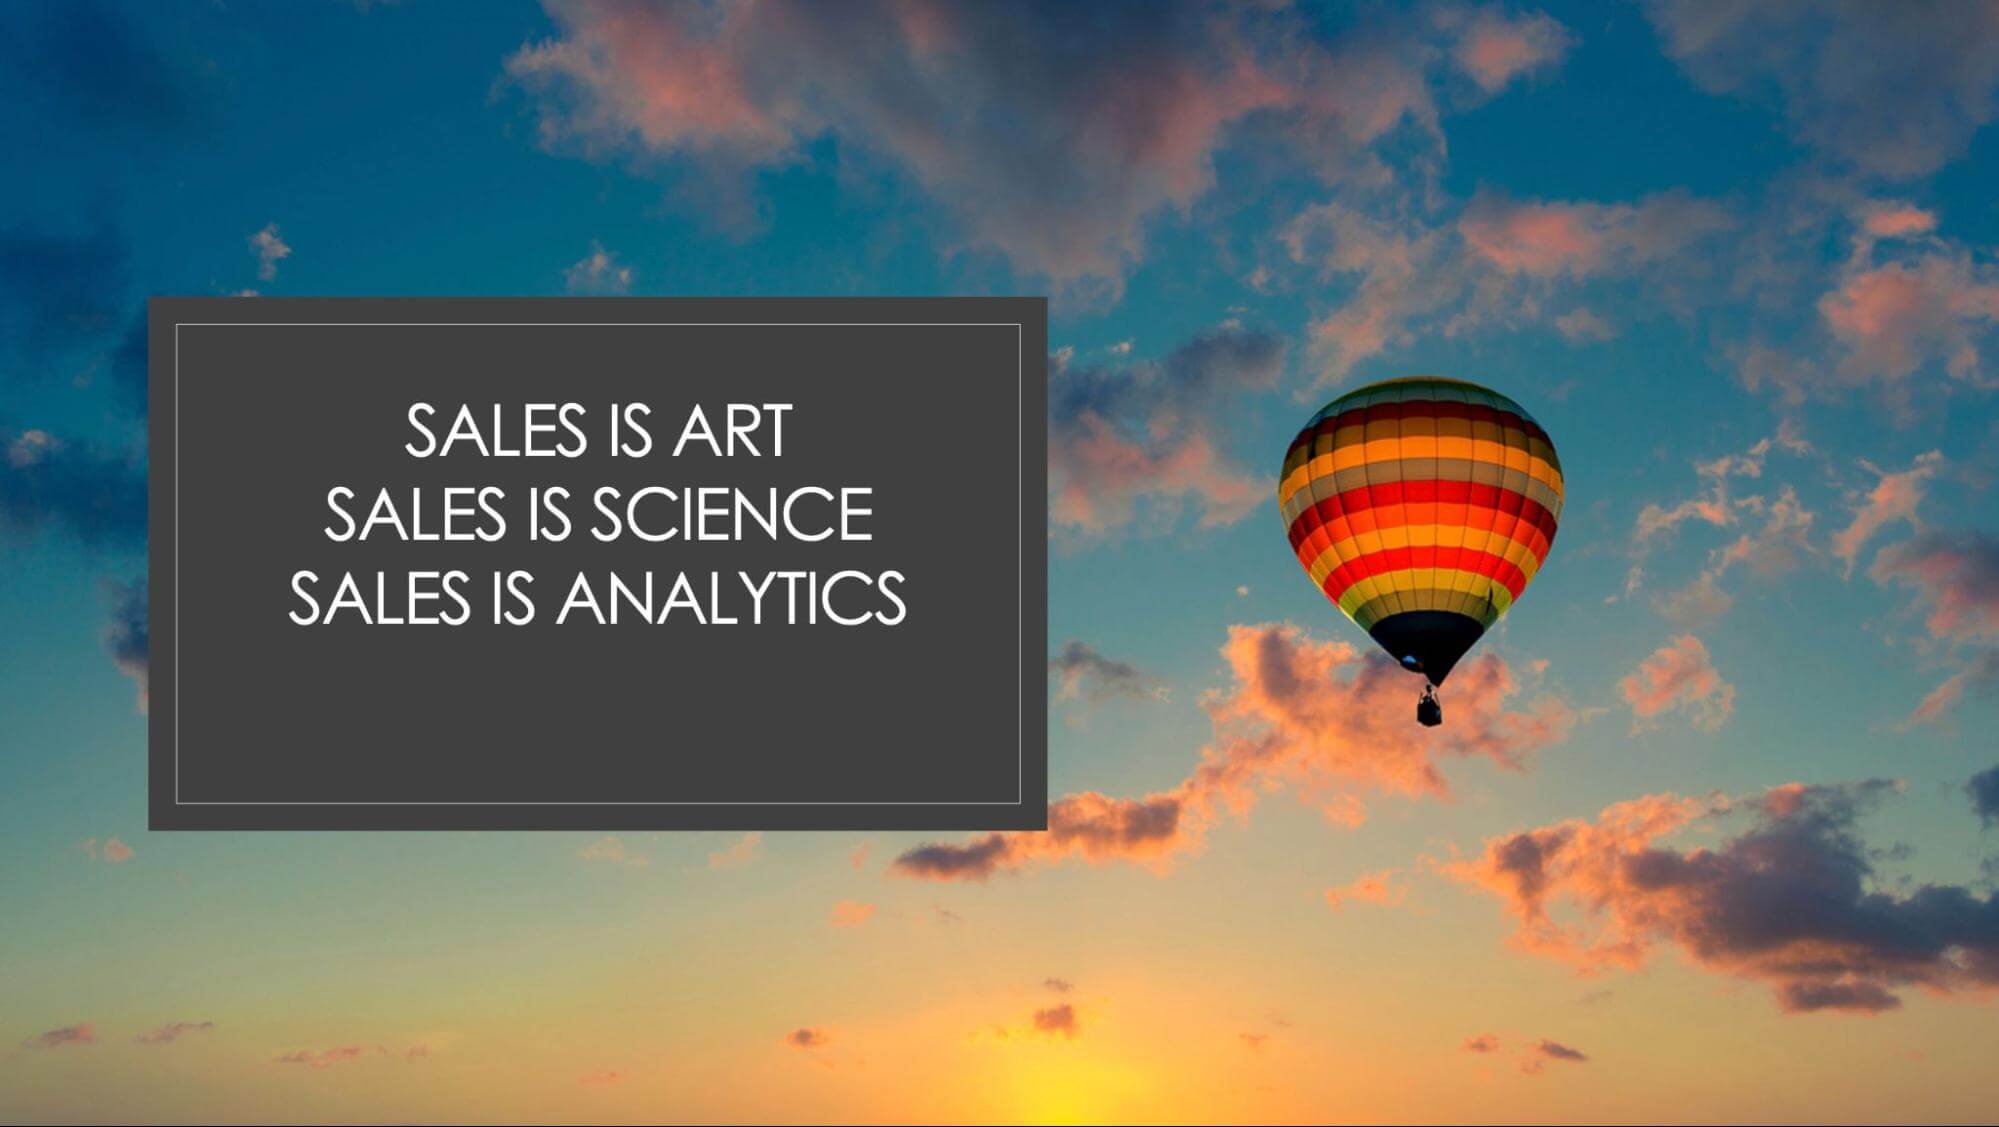 Sales is art, sales is science, sales is analytics